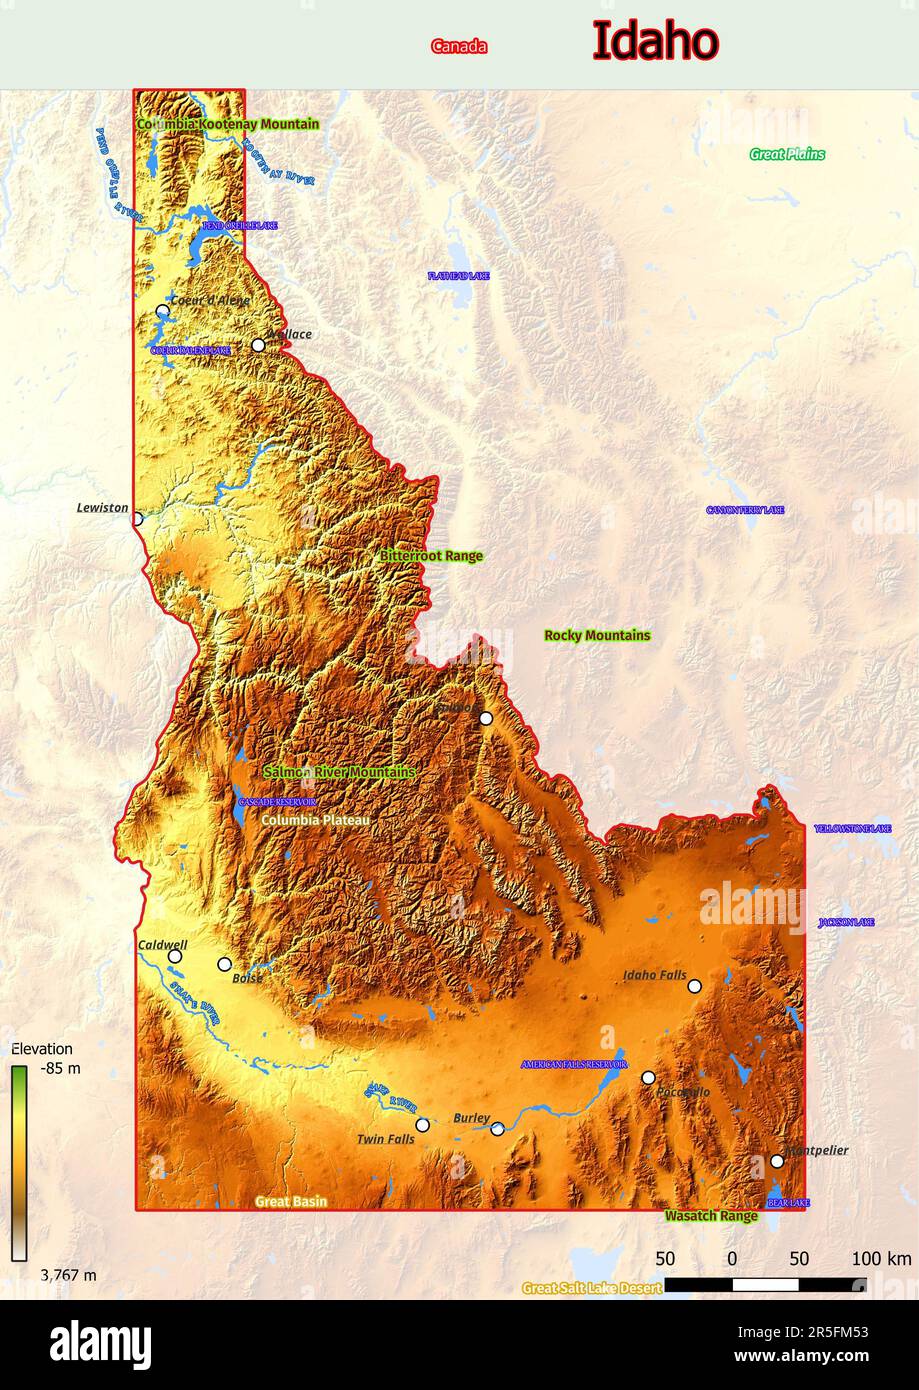 Die physische Karte von Idaho zeigt Topografie wie Berge, Hügel, Ebenen, Brücken, Flüsse, Seen Stockfoto